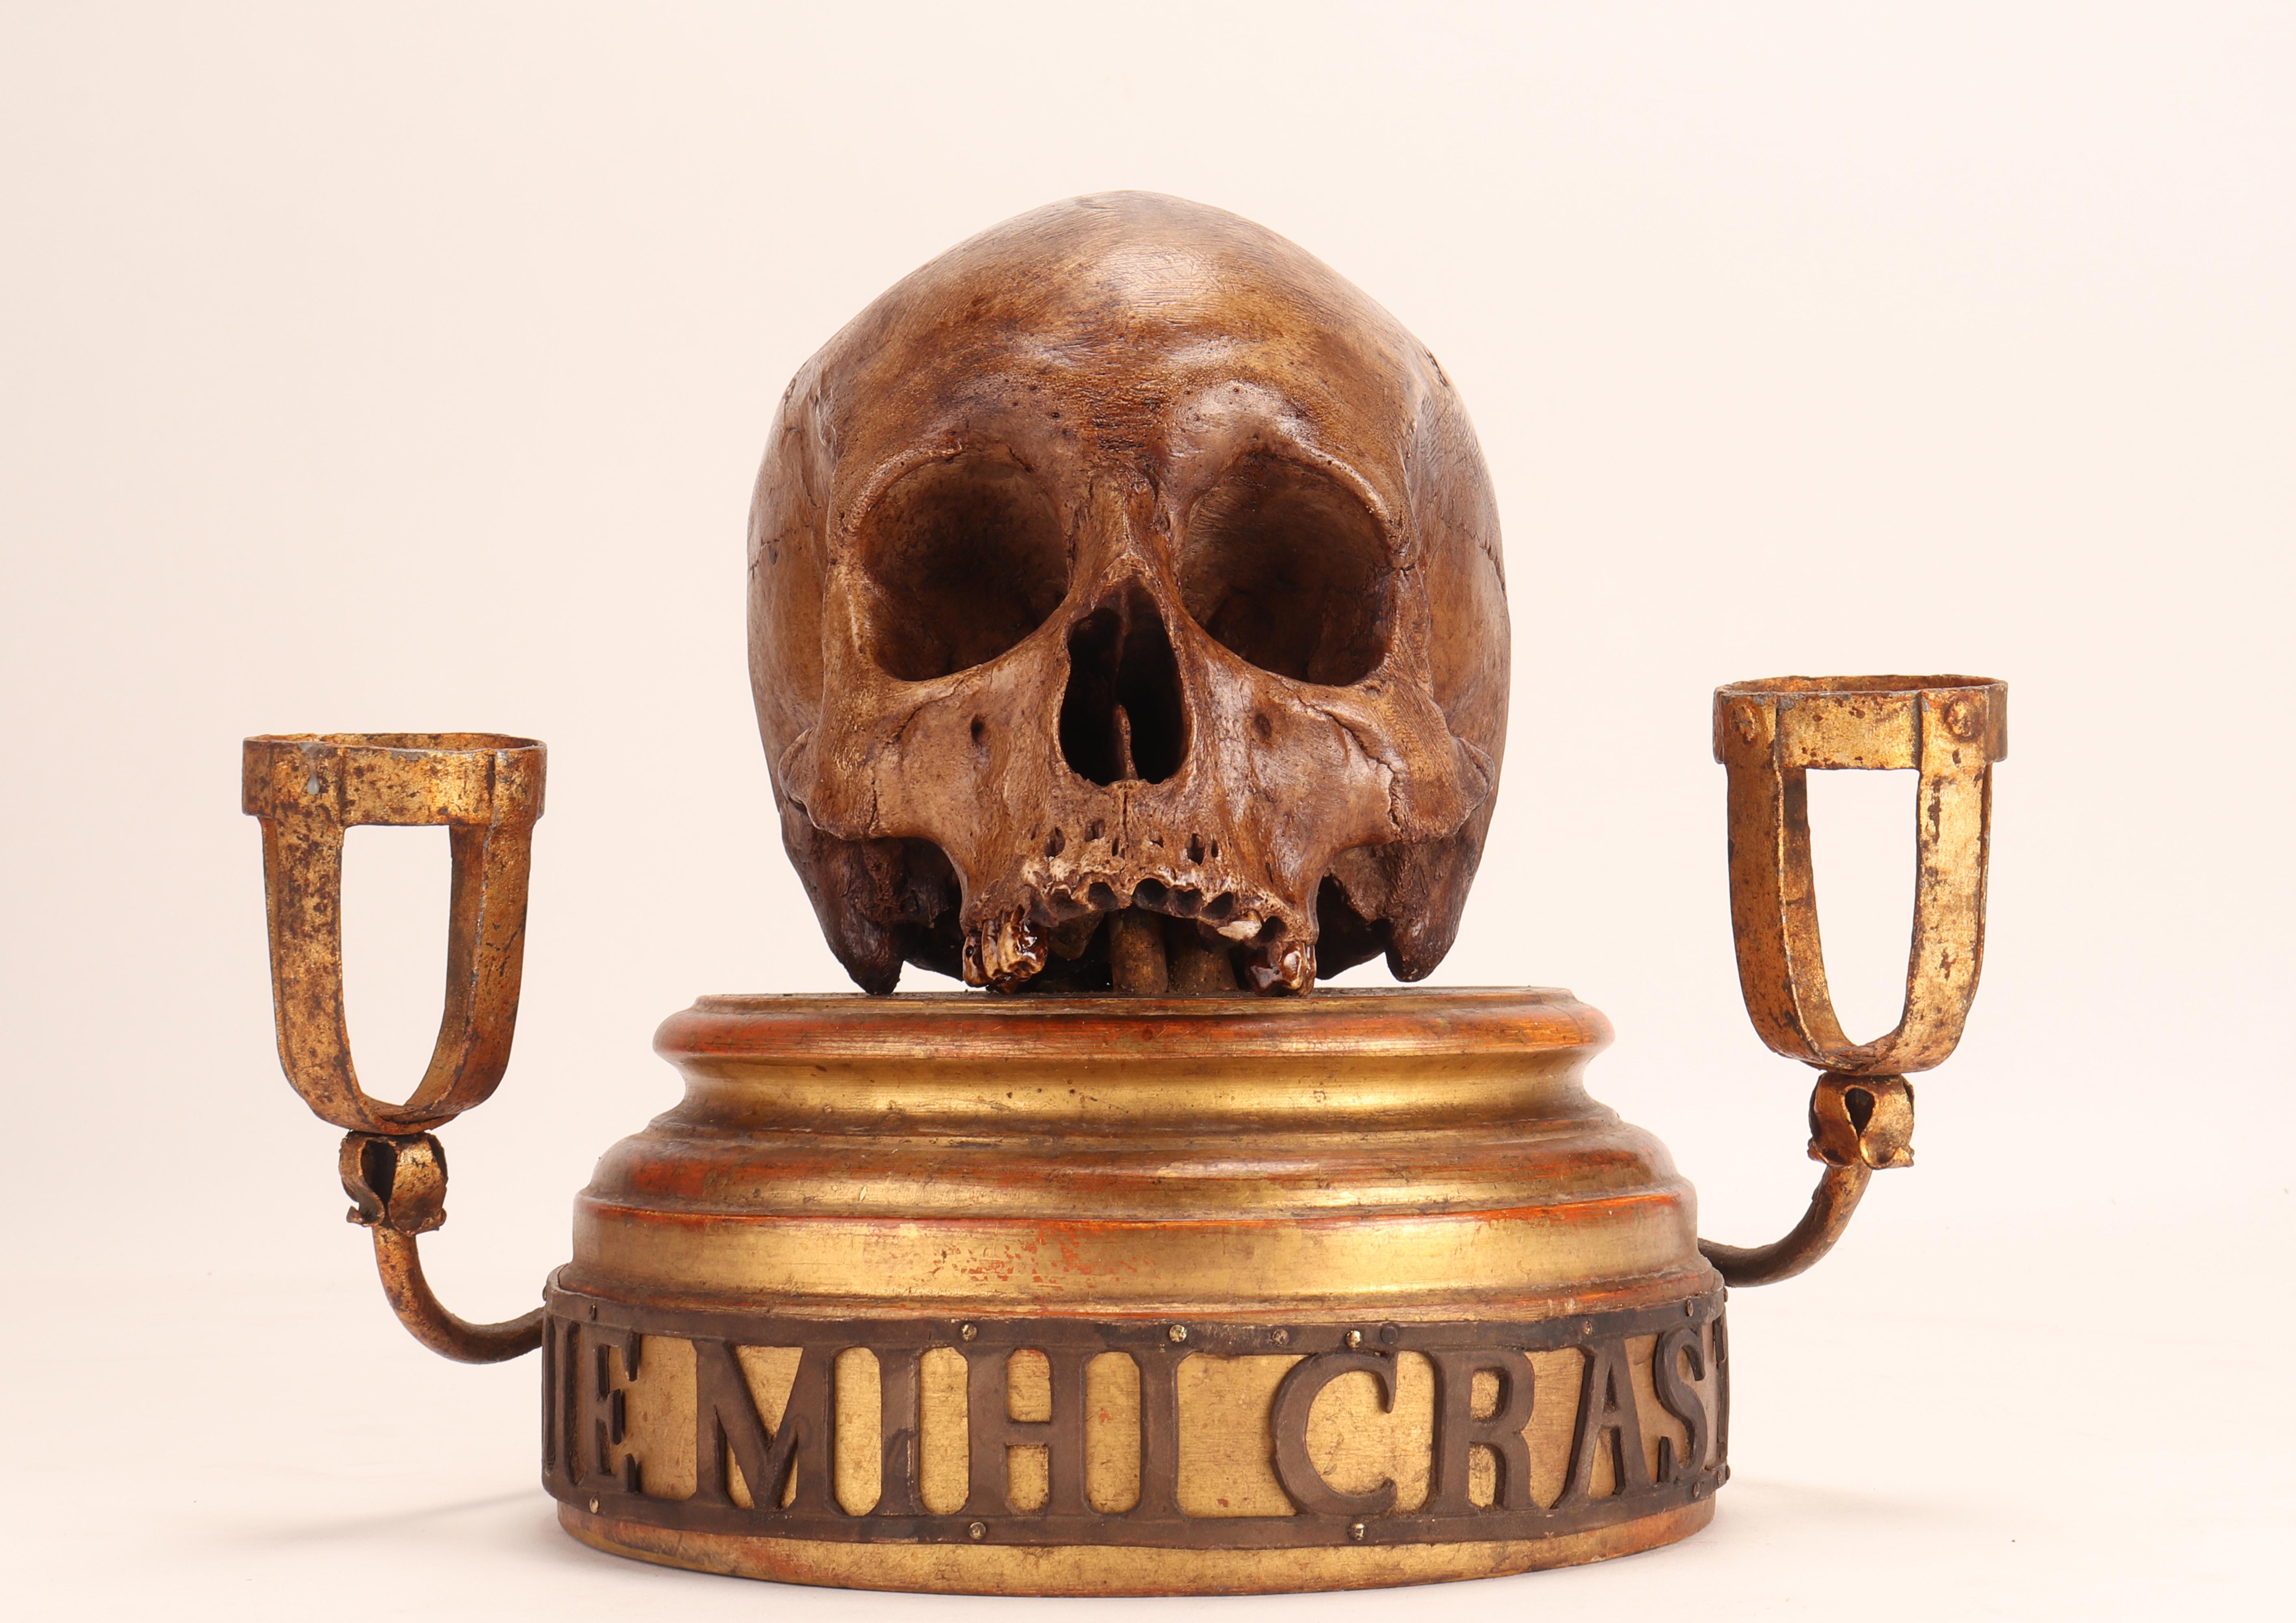 Eine Gipsskulptur, die einen Schädel darstellt, befindet sich auf einem säulenförmigen Sockel aus Tannenholz, der mit Pastiglia (feinem Gips) und vergoldetem Gold verziert ist.
Über dem oberen Teil des Sockels ist der Schädel befestigt.
Um die